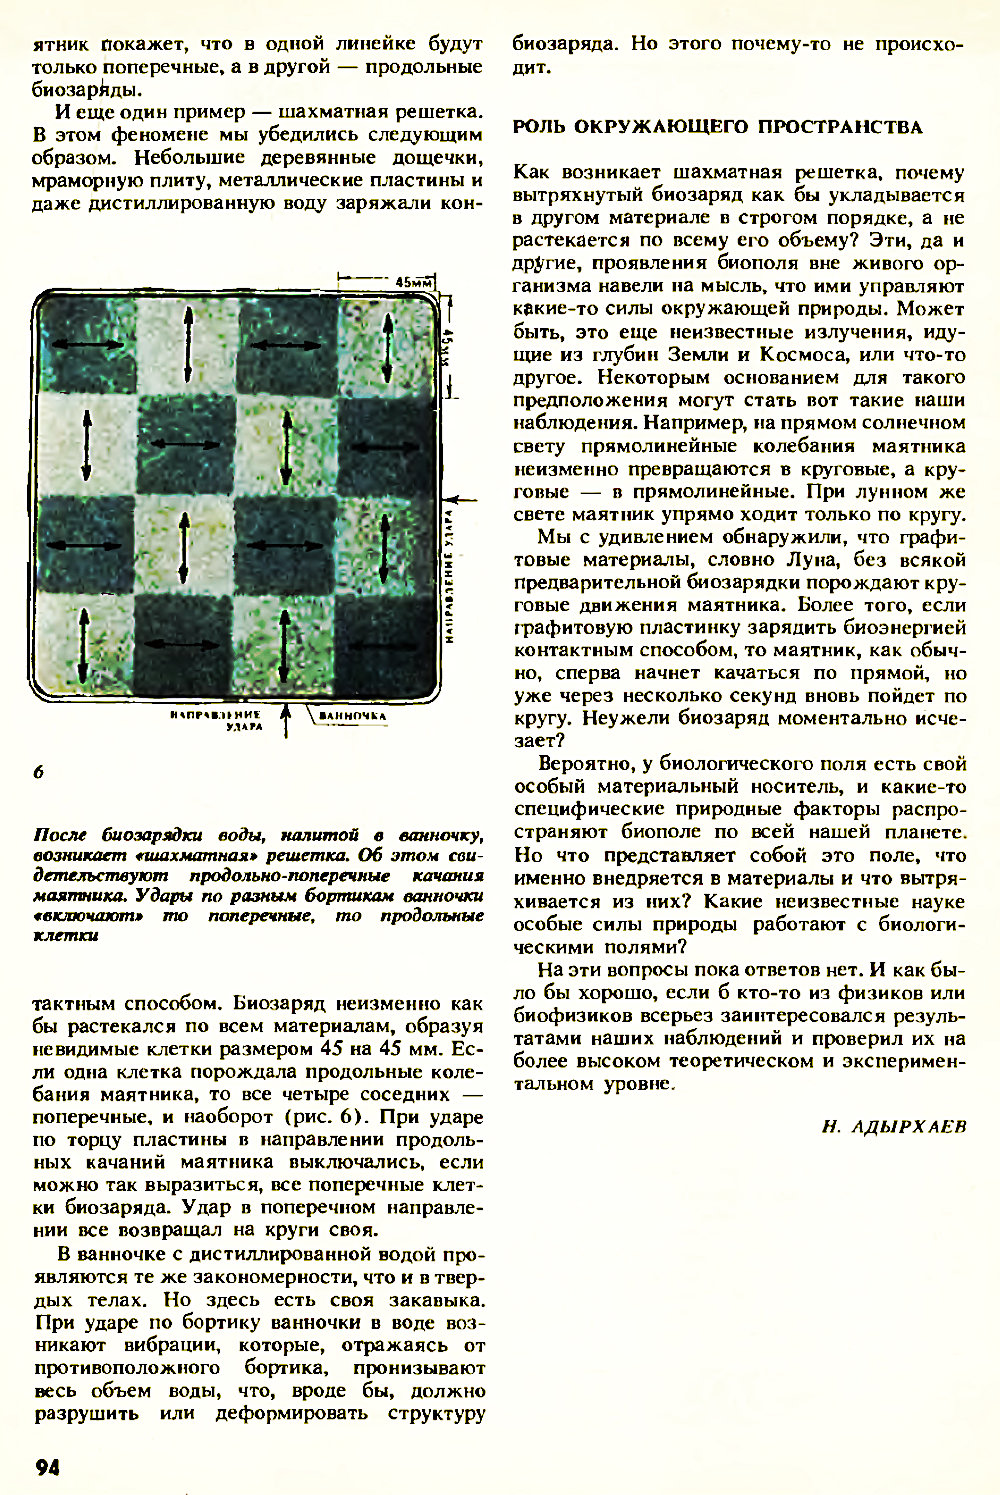 Странные проявления биополя. Н. Адырхаев. Химия и жизнь, 1990, №11, с.91-94. Фотокопия №4